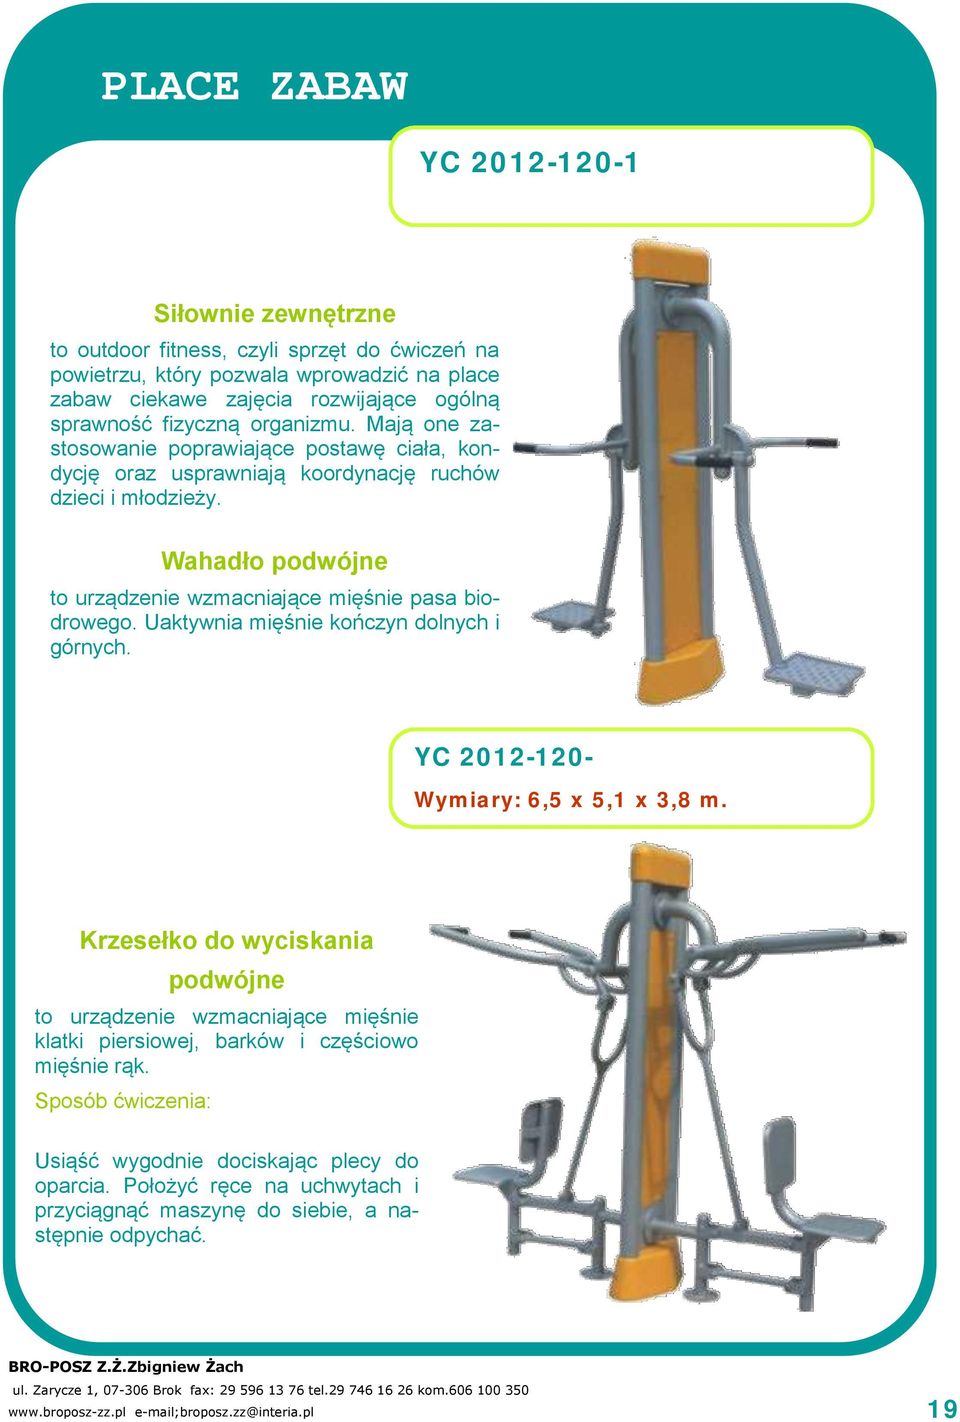 Uaktywnia mięśnie kończyn dolnych i górnych. YC 2012-120- Wymiary: 6,5 x 5,1 x 3,8 m.